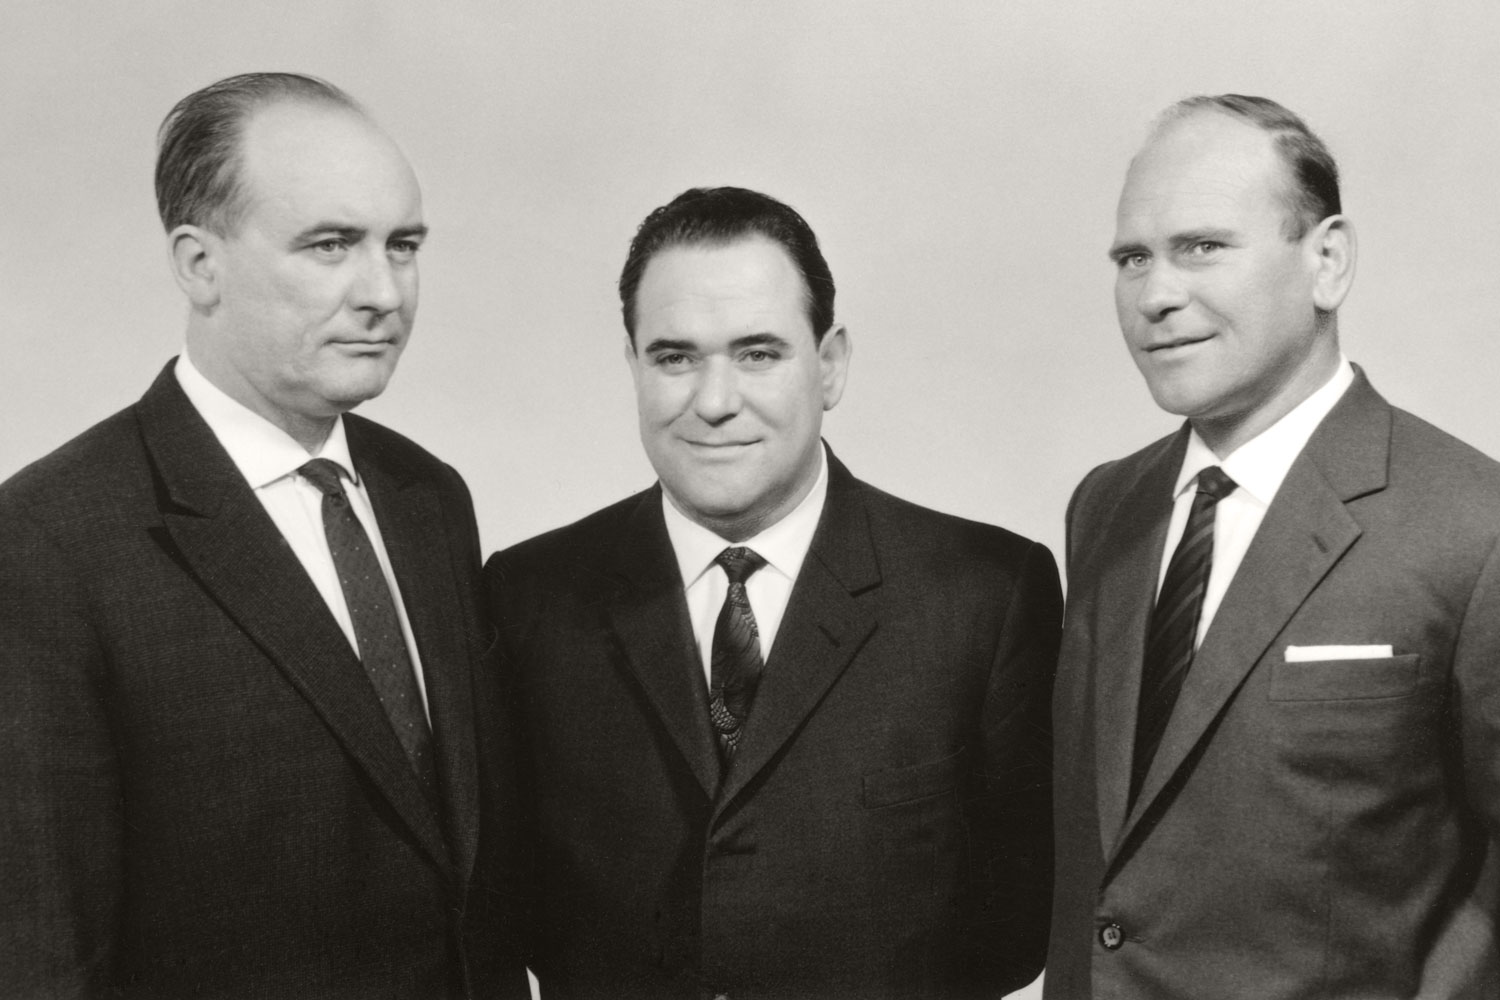 Il socievole, il parsimonioso e lo sportivo: Alois, Hans e Heinz Pöttinger.